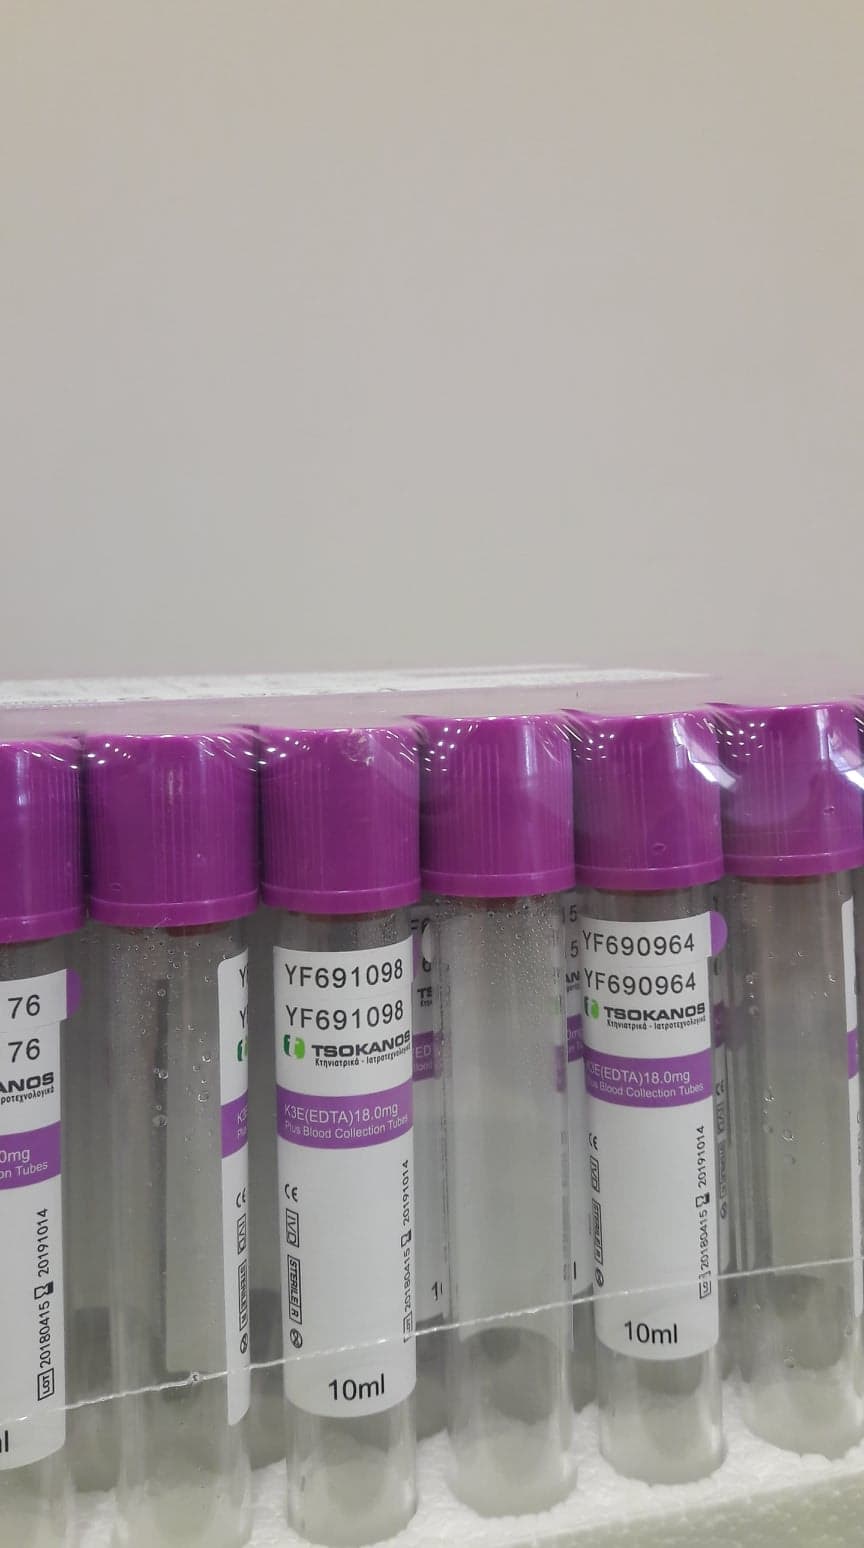 Blood collection tubes EDTA TSOKANOS 10 ml